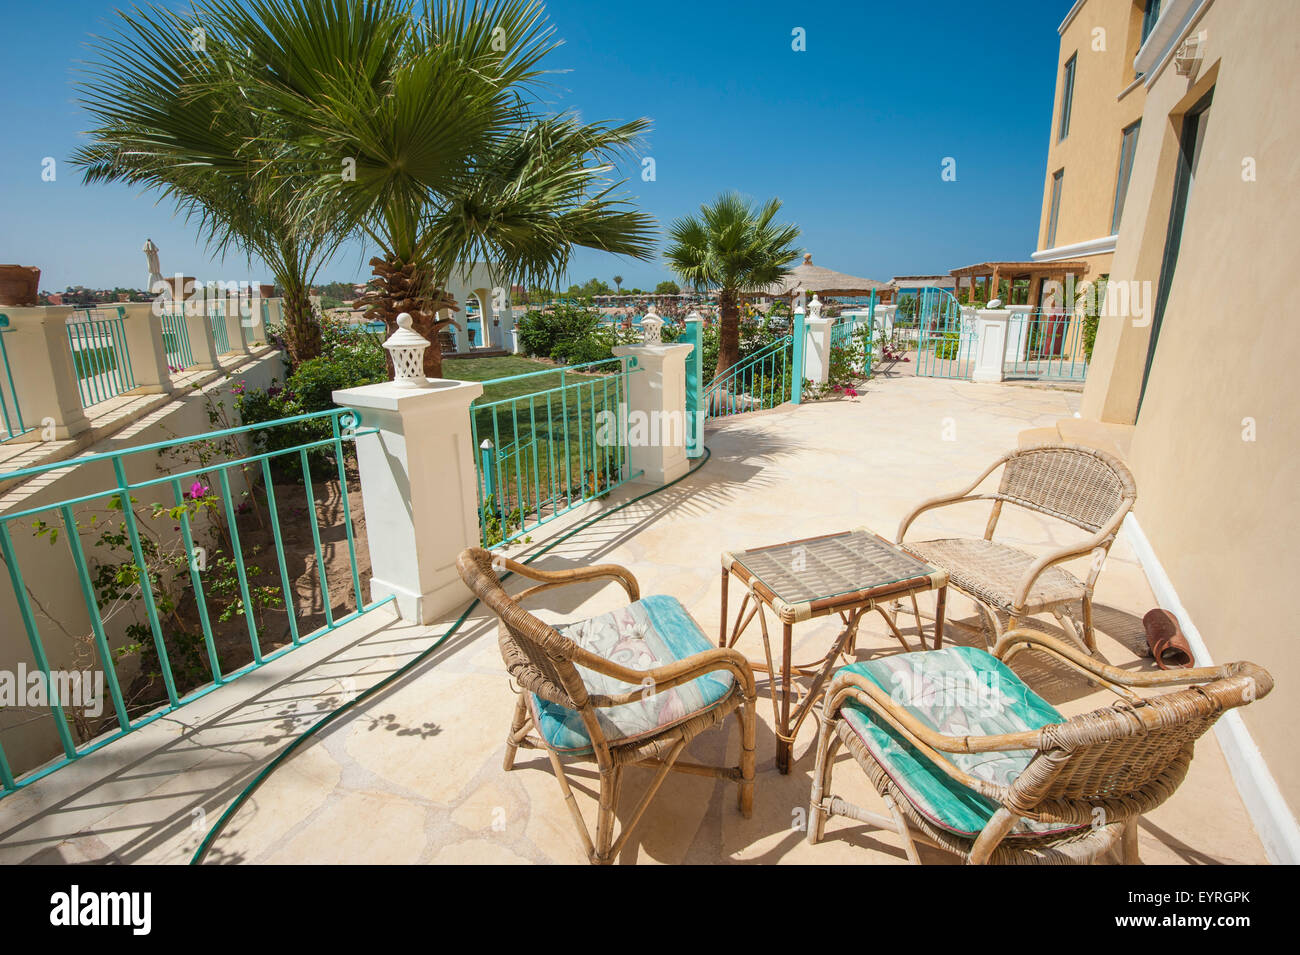 Terrasse im freien Bereich einer Luxus-Villa mit Garten in einem tropischen resort Stockfoto